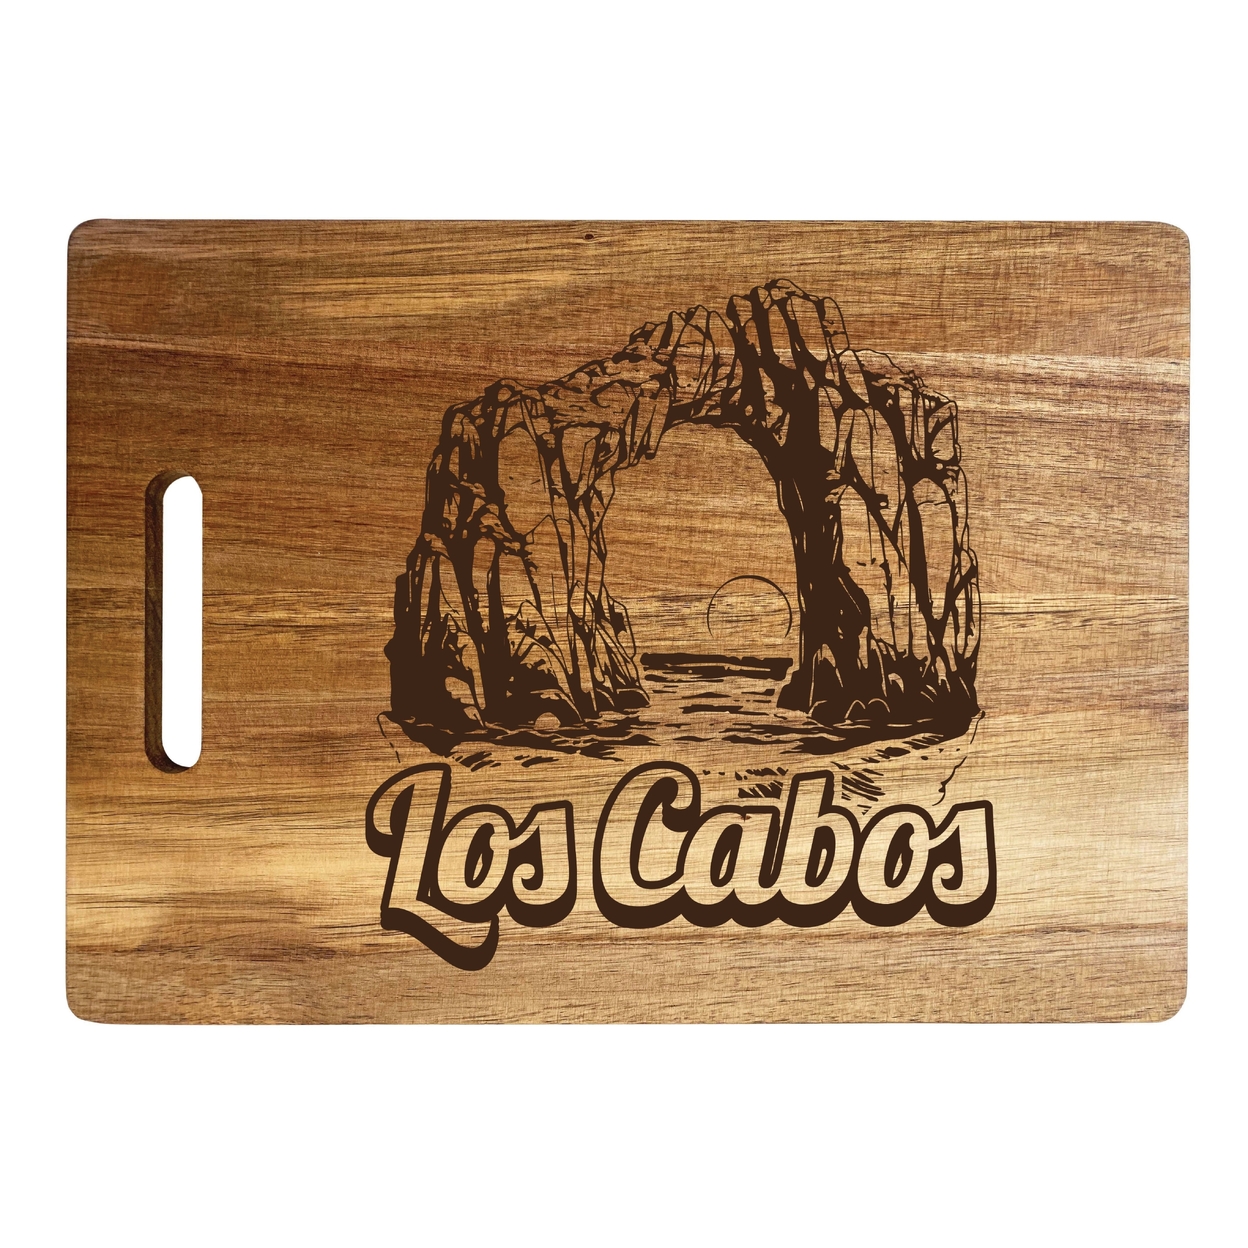 Los Cabos Mexico Souvenir Wooden Cutting Board 10 X 14